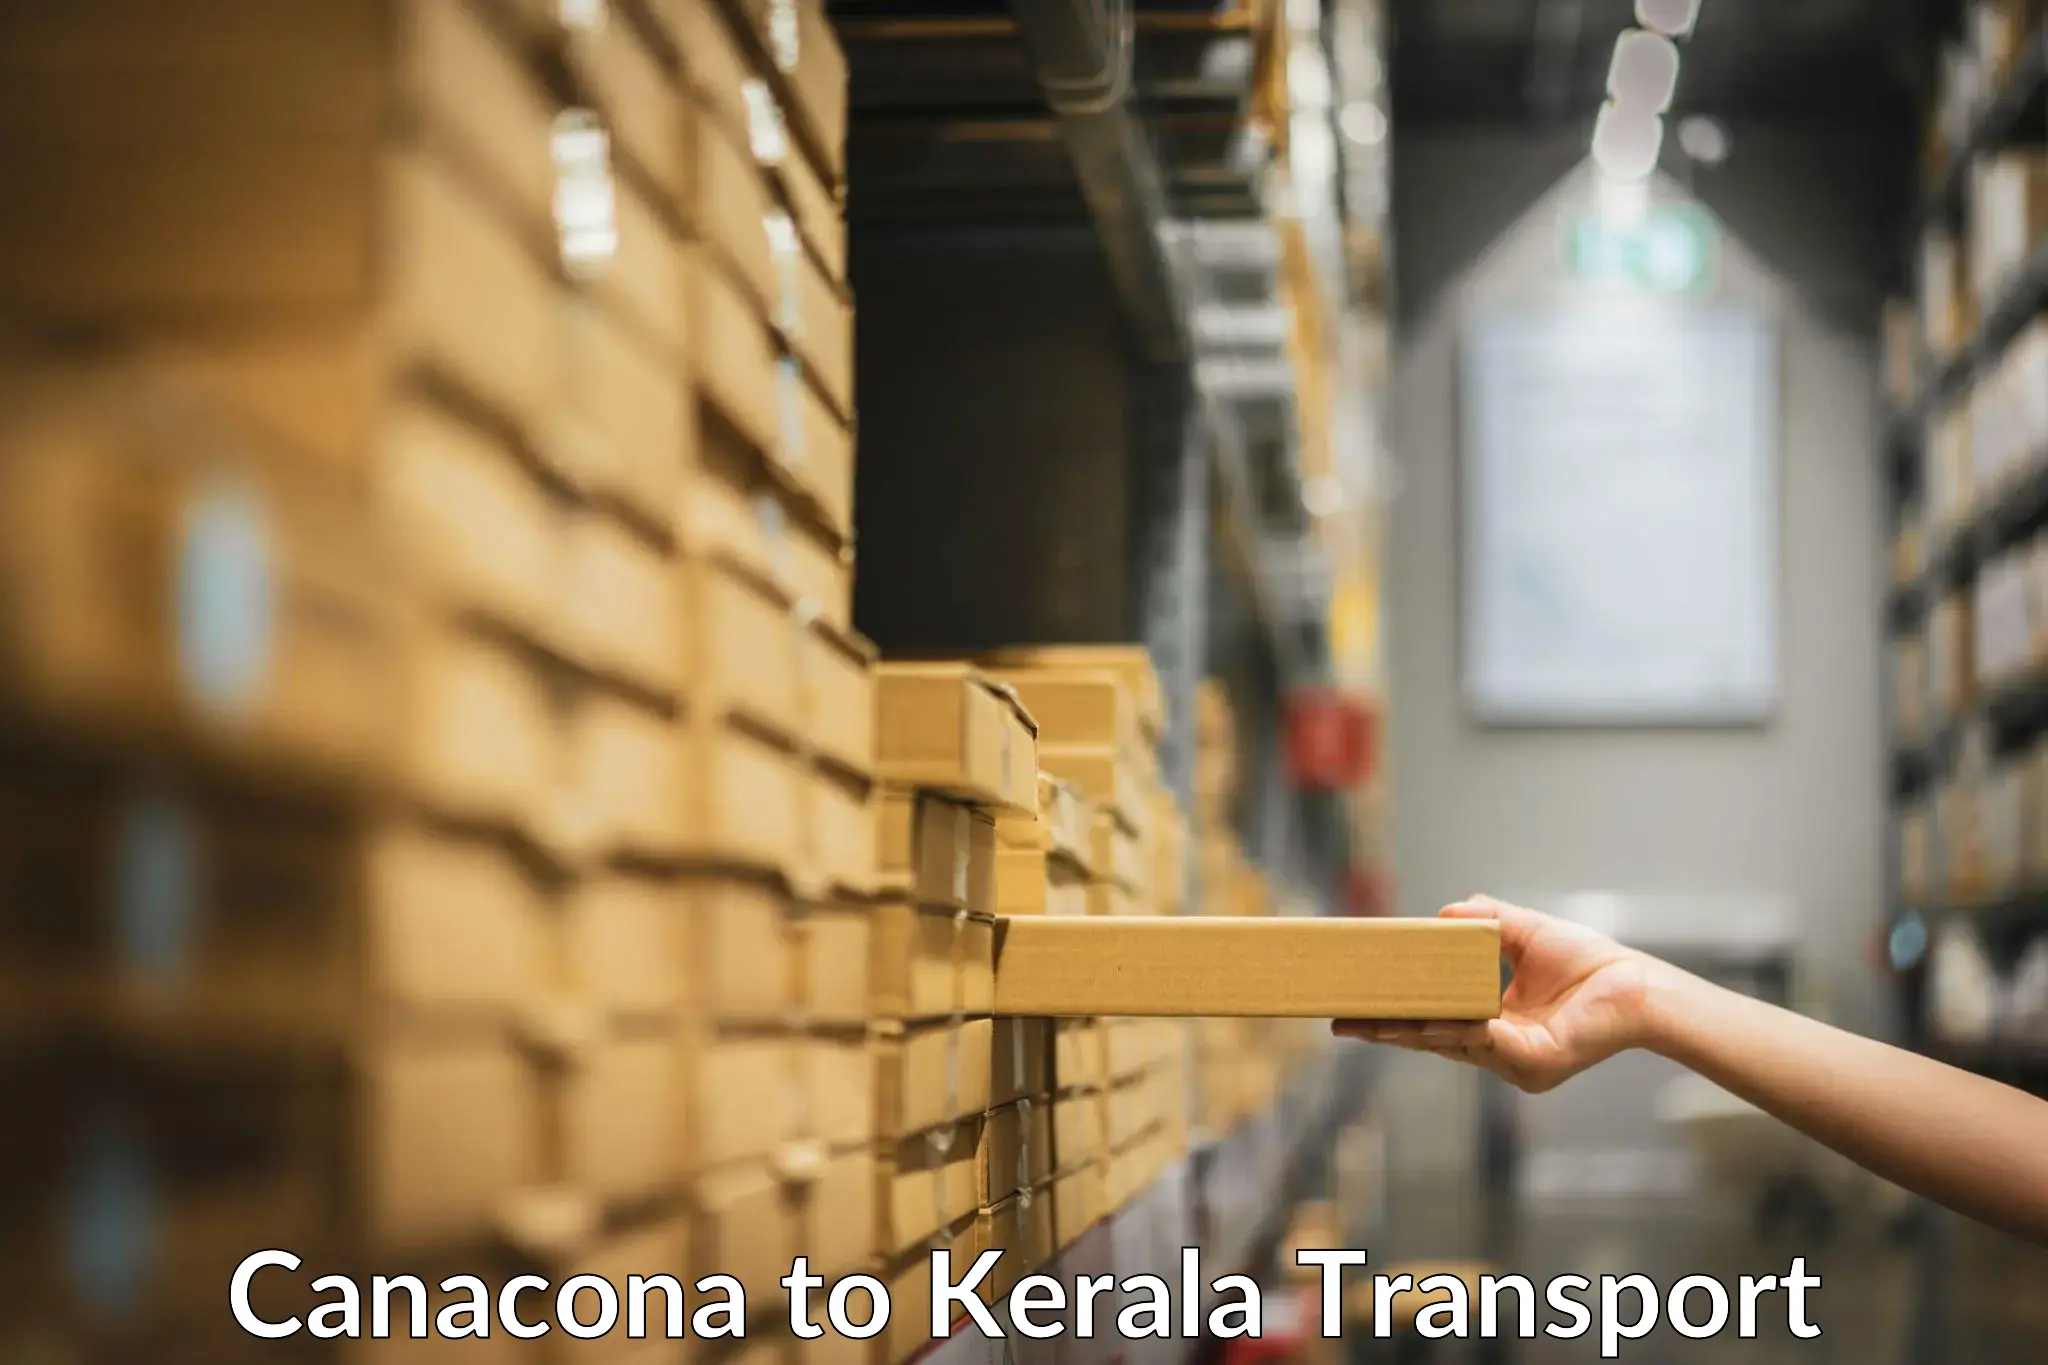 All India transport service Canacona to Calicut